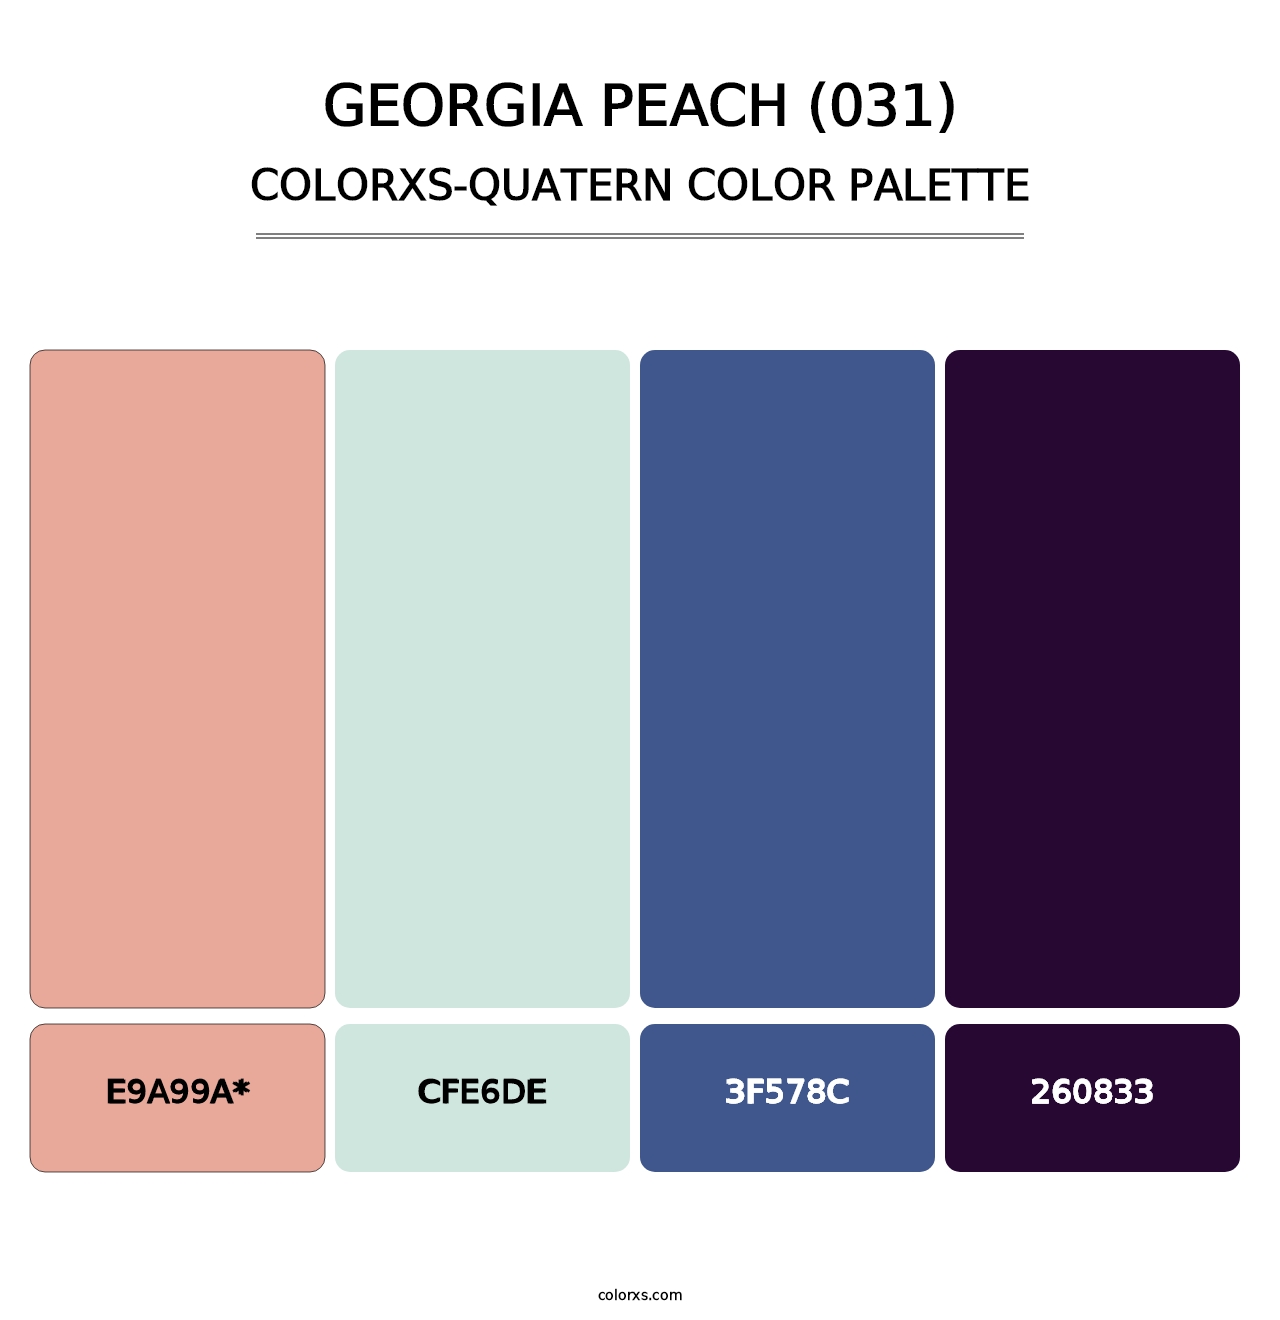 Georgia Peach (031) - Colorxs Quatern Palette